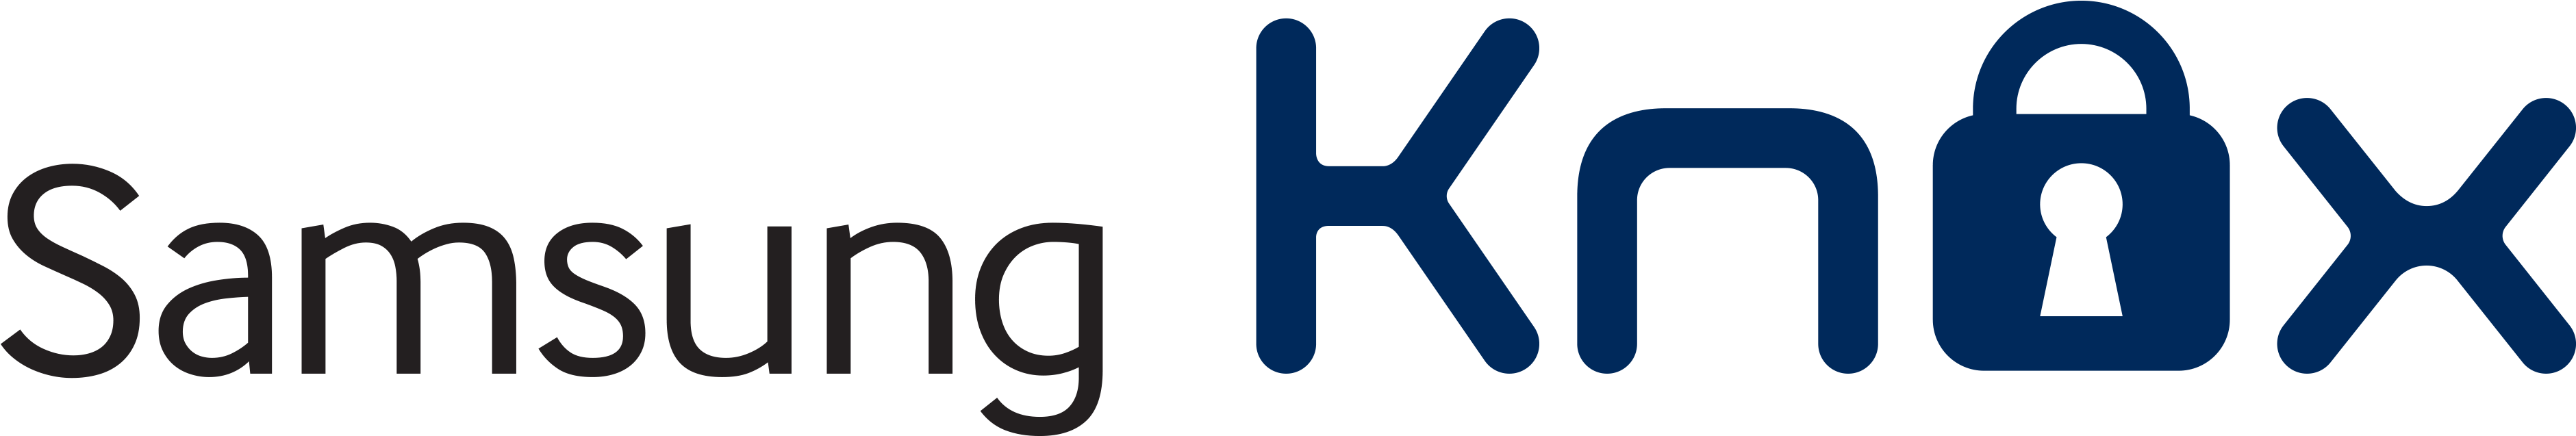 Samsung Knox Logo Png - Samsung Knox Clipart (4000x936), Png Download